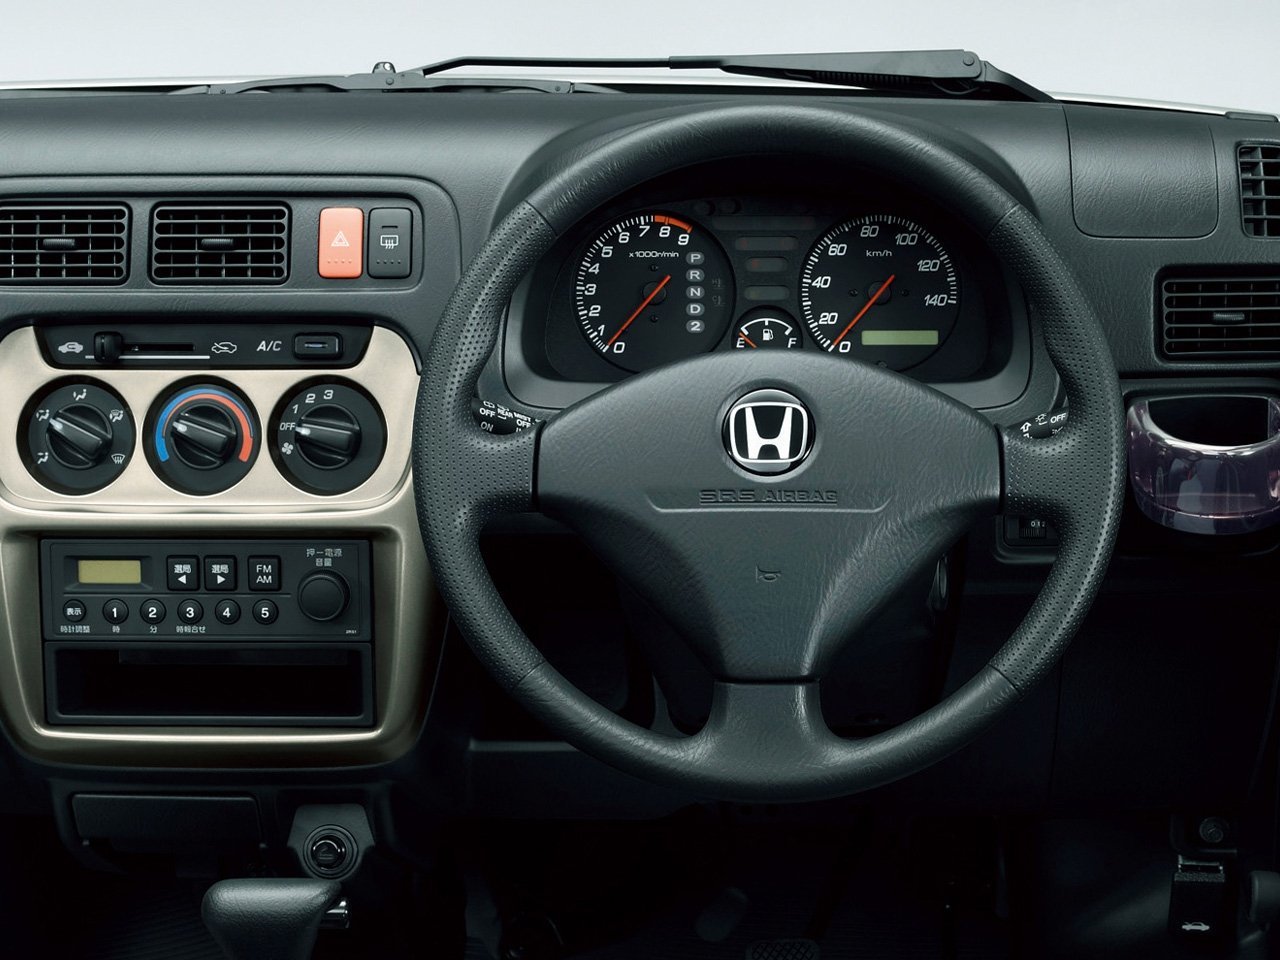 минивэн Honda Acty 1999 - 2016г выпуска модификация 0.7 AT (53 л.с.) 4×4